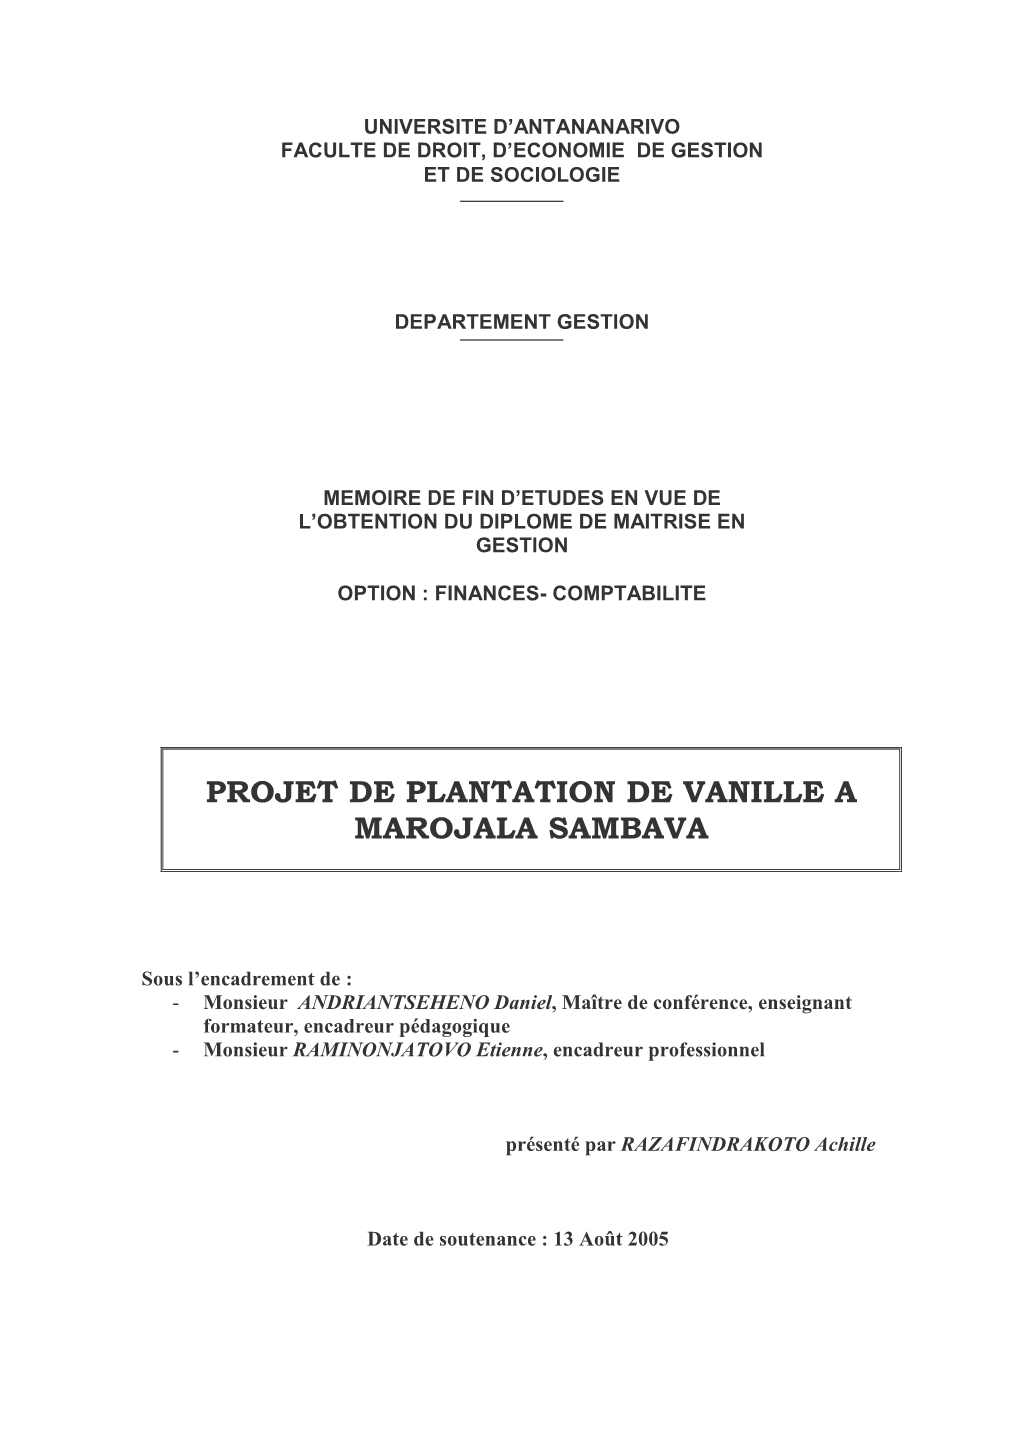 Projet De Plantation De Vanille a Marojala Sambava